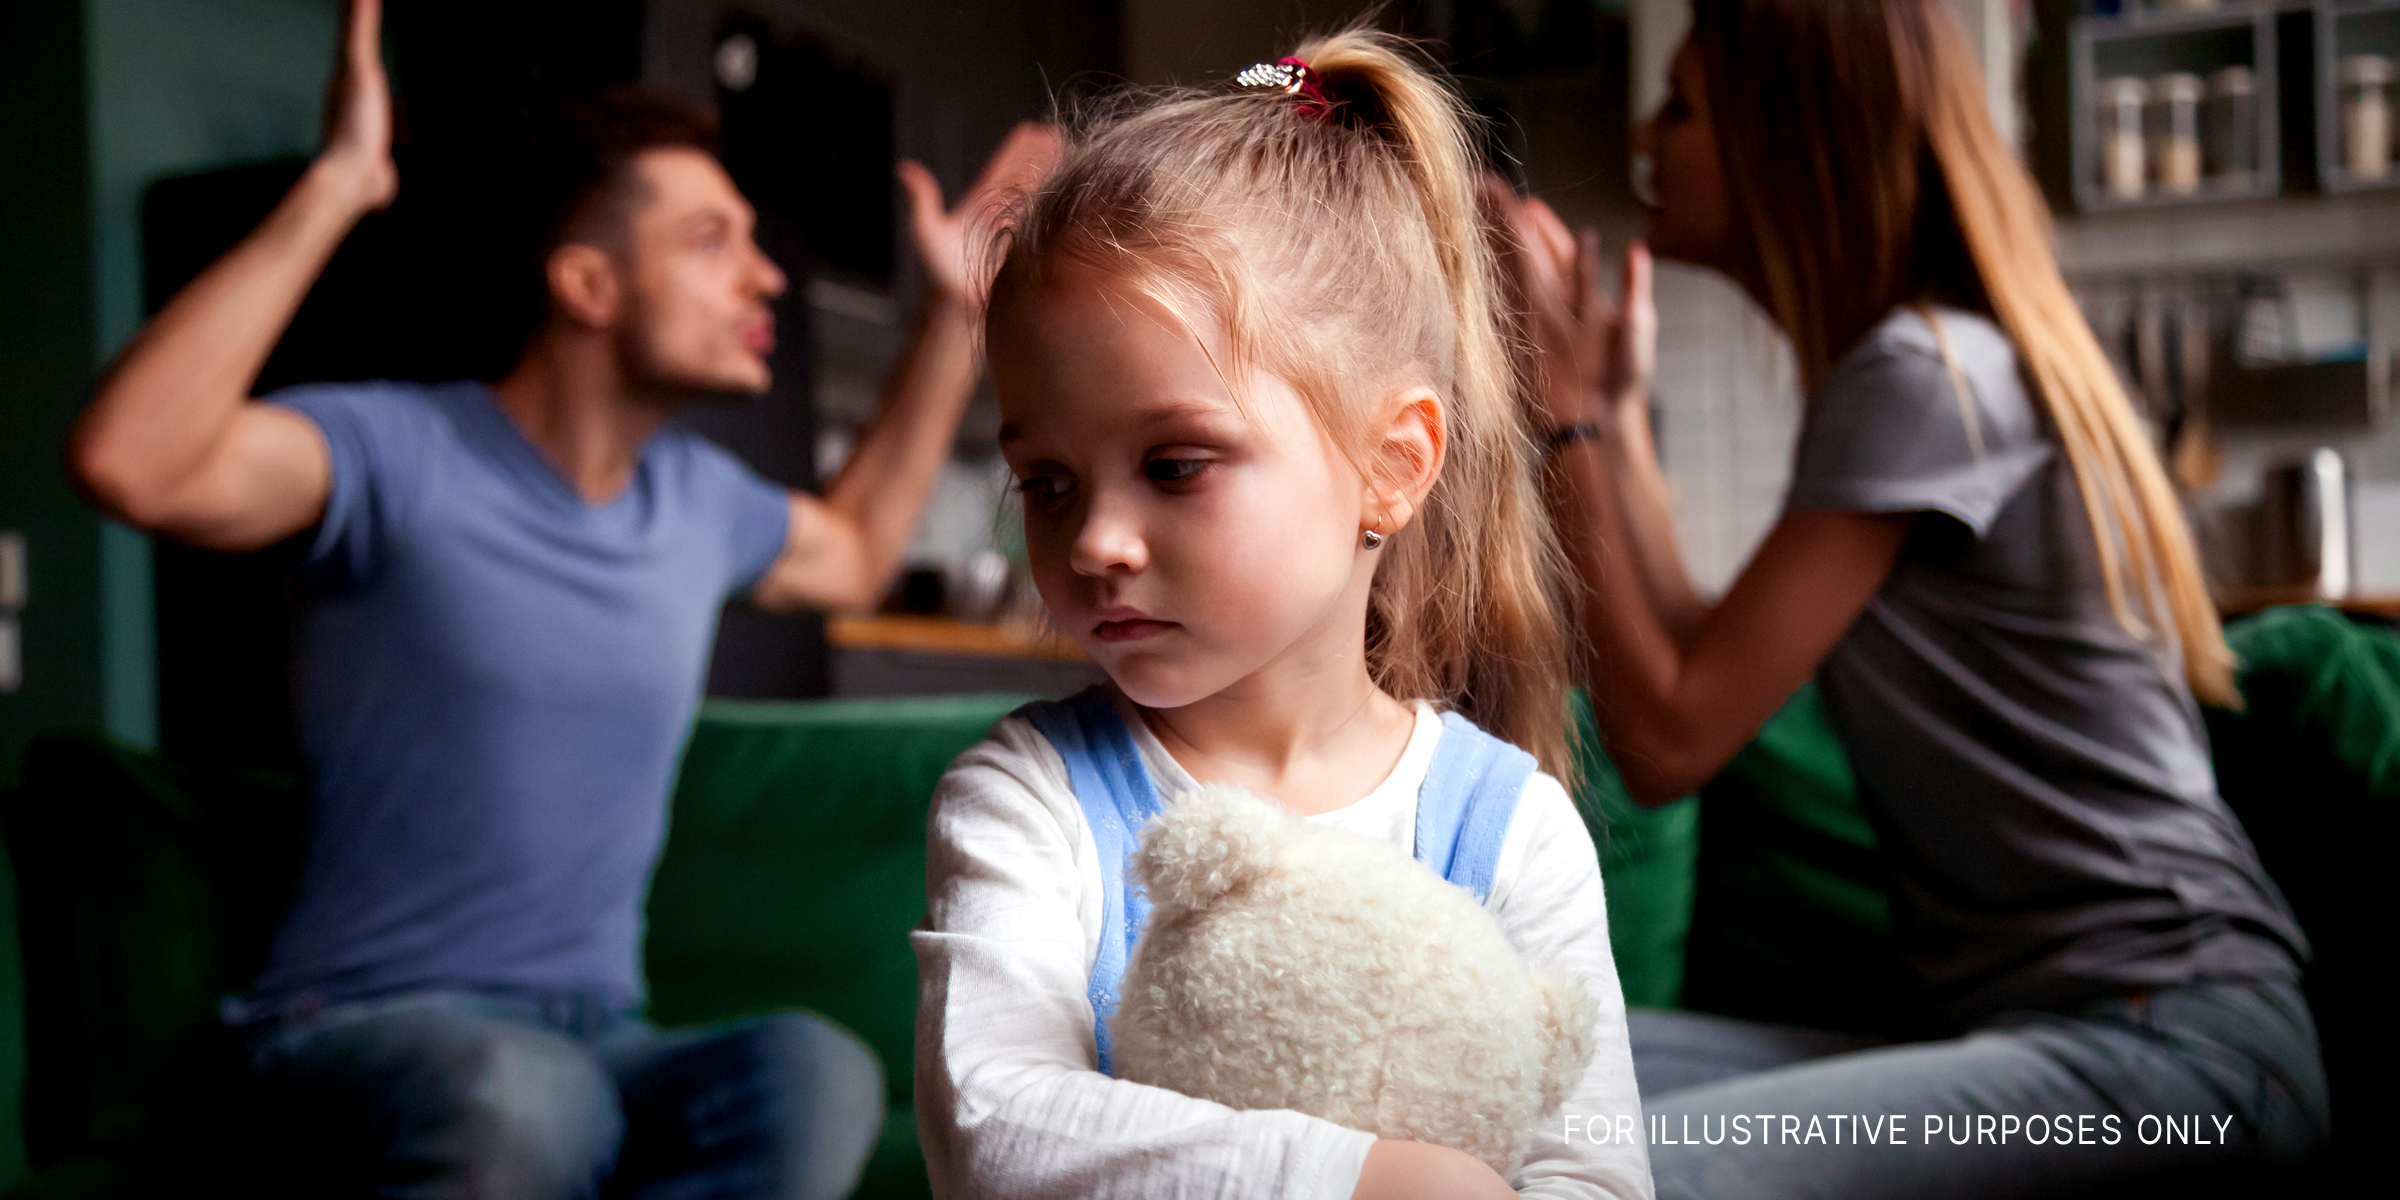 Mädchen, das traurig ist, während sich seine Eltern streiten | Quelle: Shutterstock